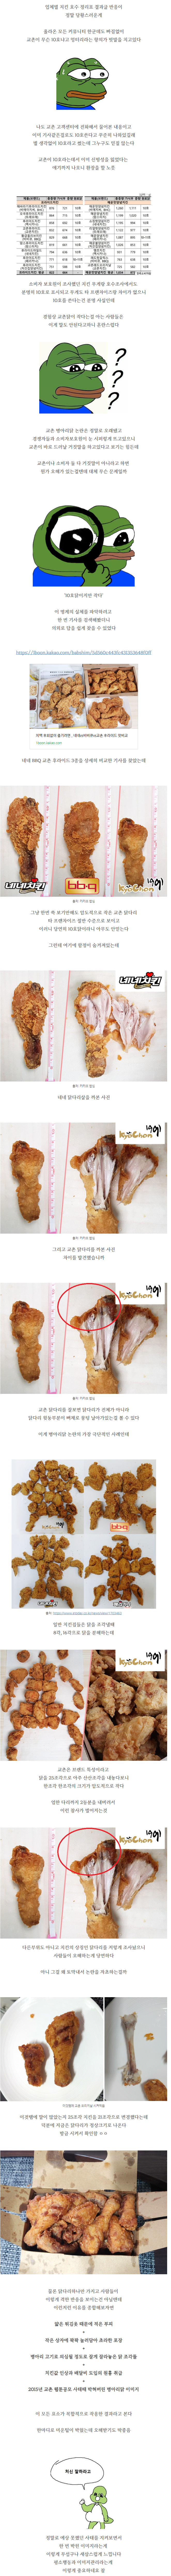 치킨 프랜차이즈별 닭호수 + 교촌논란 정리